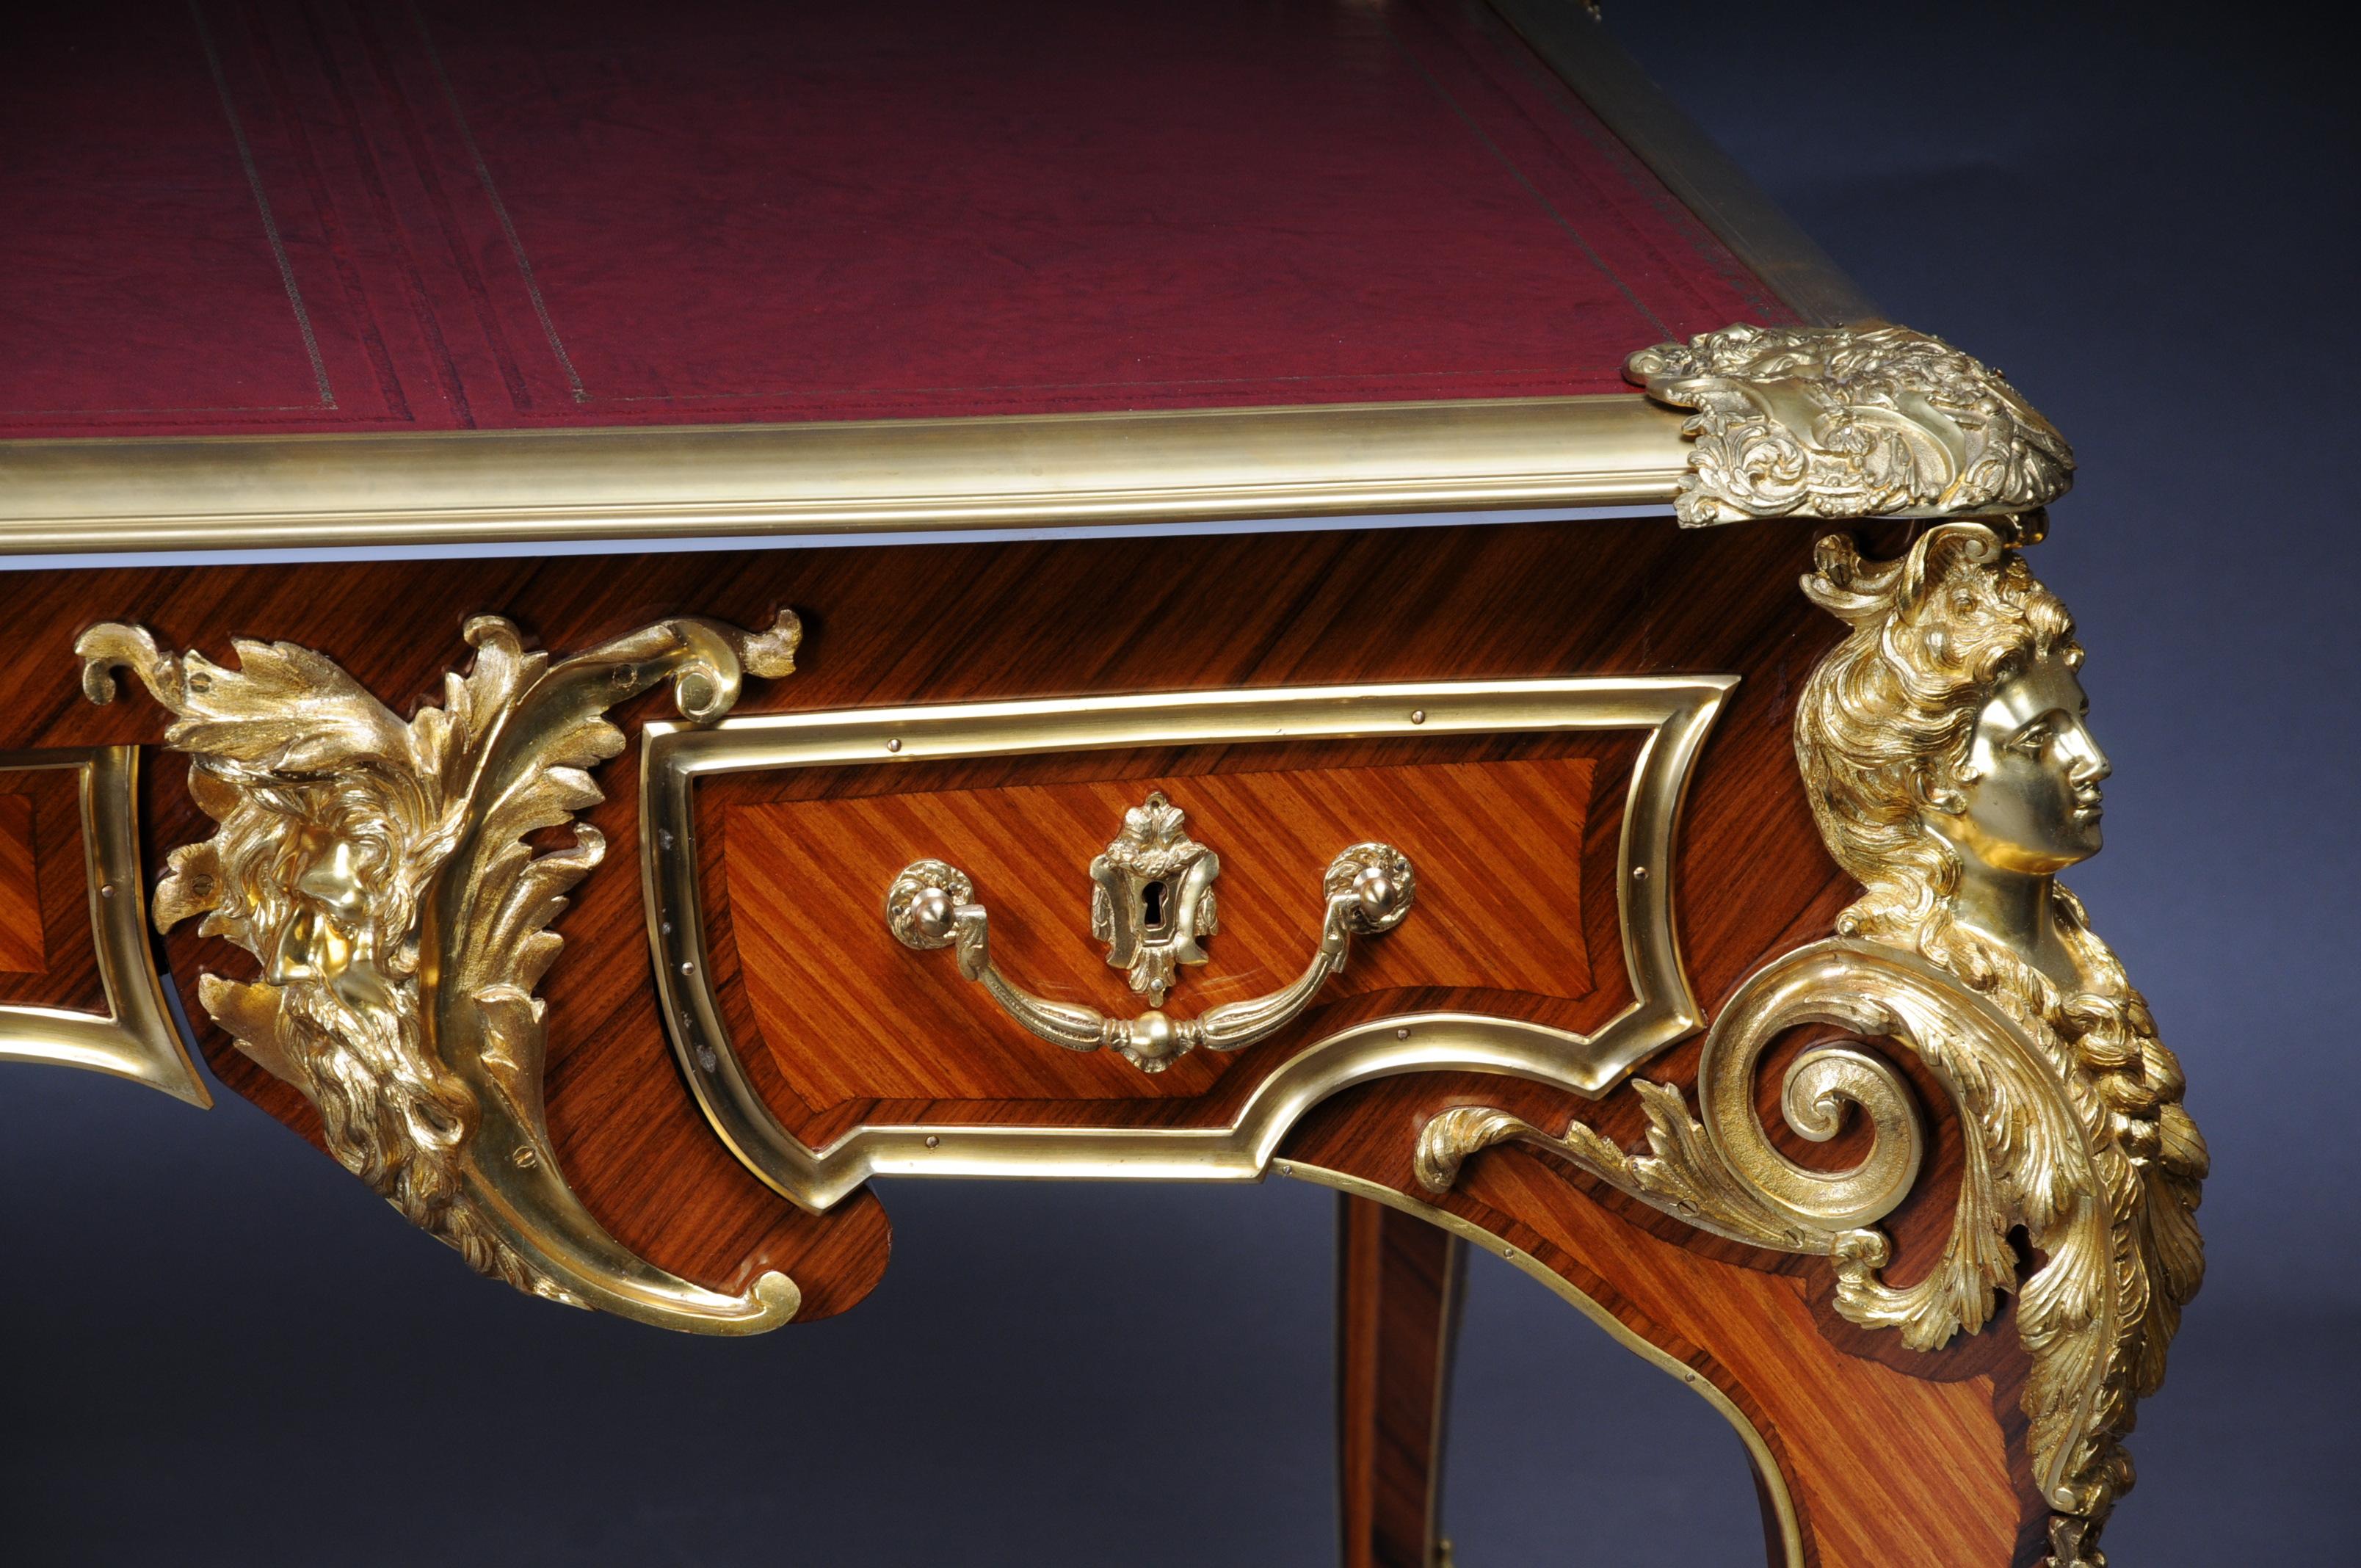 Dieses Modell wurde von Charles Boulle, dem bedeutendsten Historiker Ludwigs XV. gebaut.
 Furnier auf massiver Buche und Eiche. Äußerst fein ziselierte Bronze. Leicht vorstehende, profilierte Tischplatte und goldgeprägter Ledereinsatz, flankiert